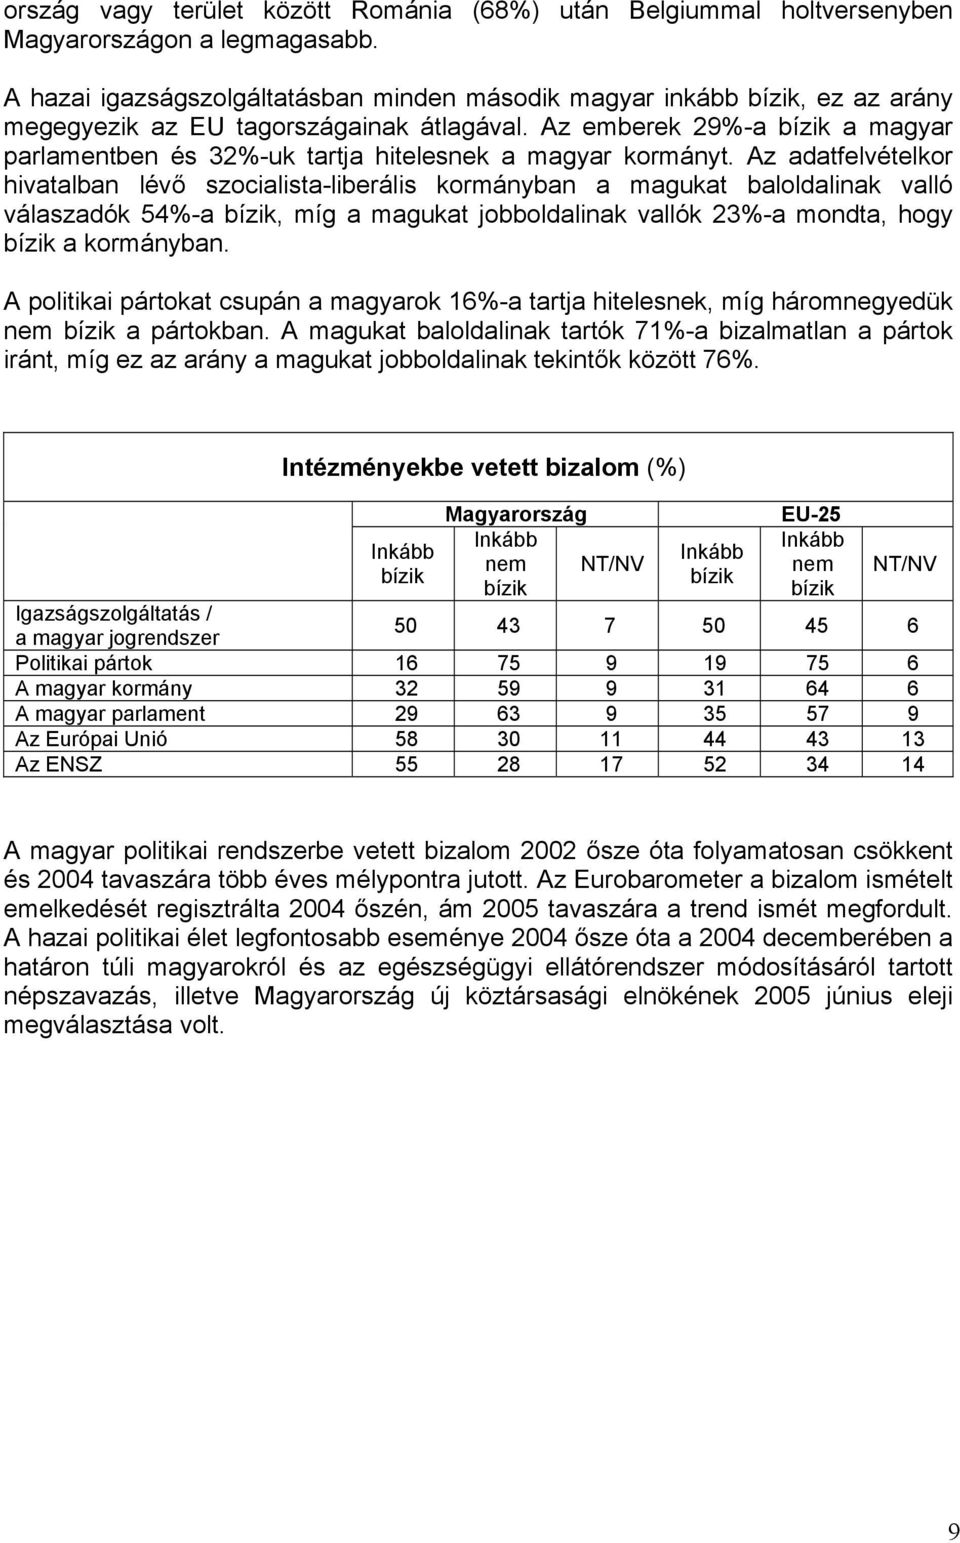 Az emberek 29%-a bízik a magyar parlamentben és 32%-uk tartja hitelesnek a magyar kormányt.